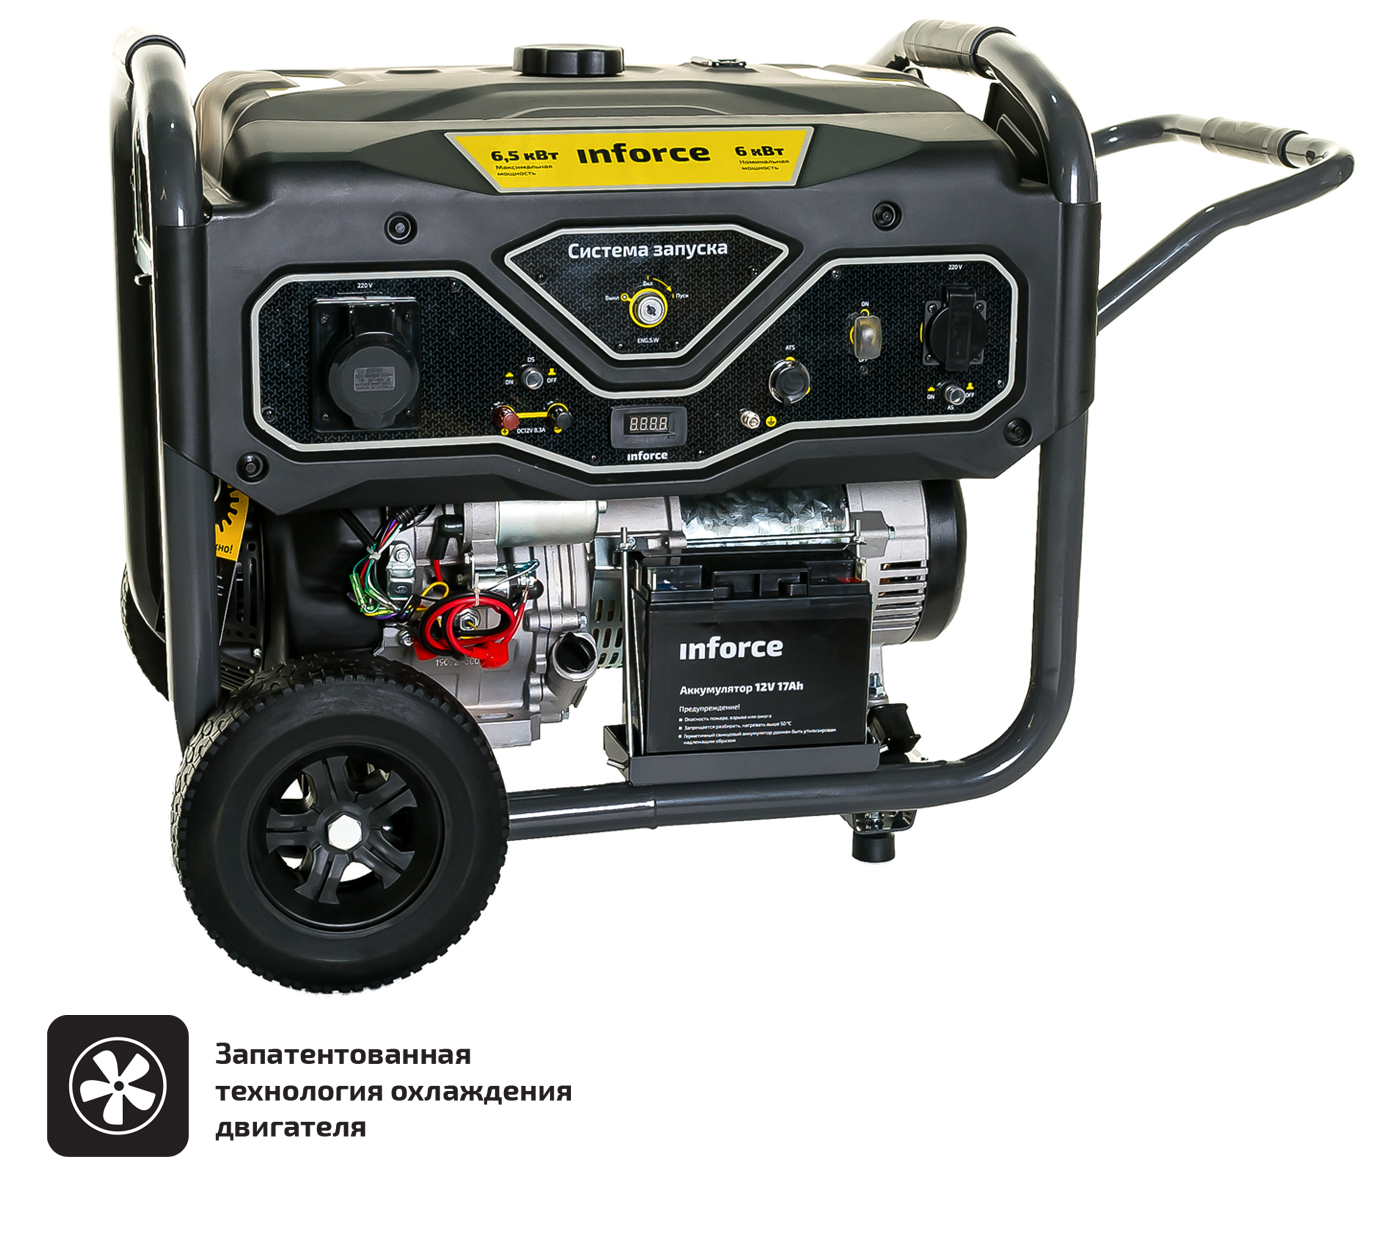 Бензиновый генератор с возможностью подключения блока автоматики Inforce GL 6500 04-03-15 генератор бензиновый кратон gg 6500 3рel без аккумулятора 3 08 01 054